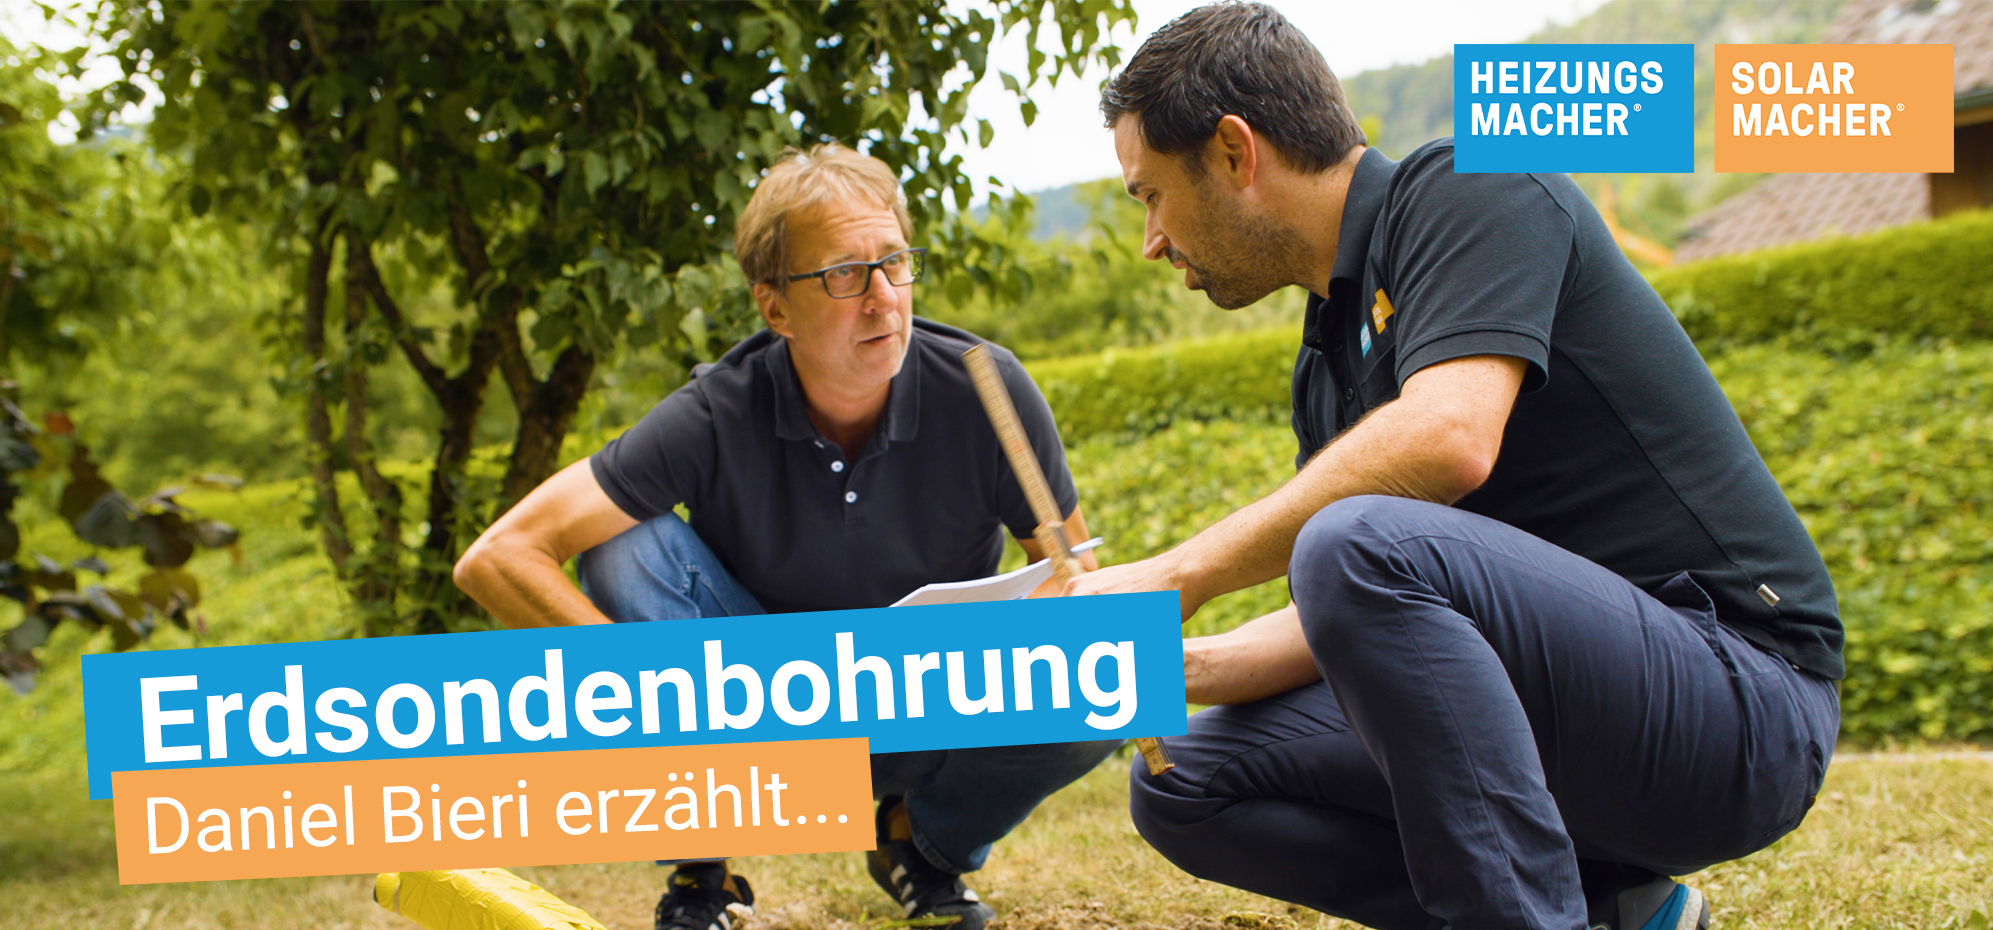 Titelbild Erdsondenbohrung Projekt Erfahrungsbericht von Daniel Bieri mit Geschäftsführer Thomas Schweingruber